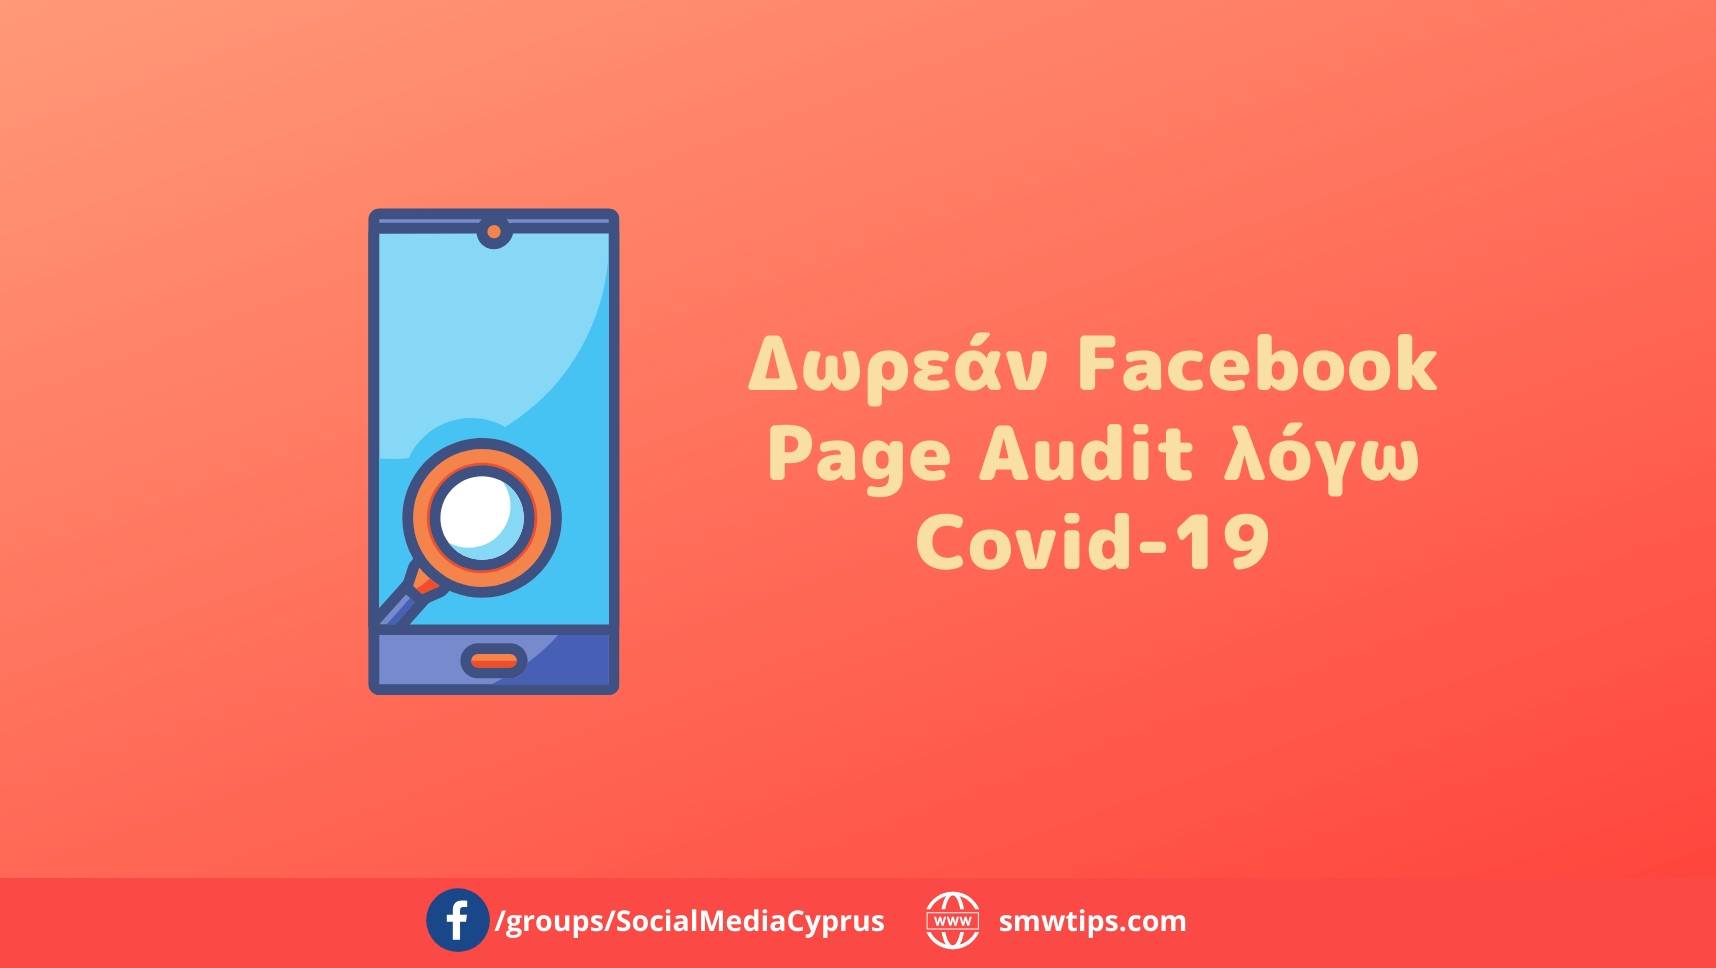 Δωρεάν Facebook Page Audit λόγω Covid-19